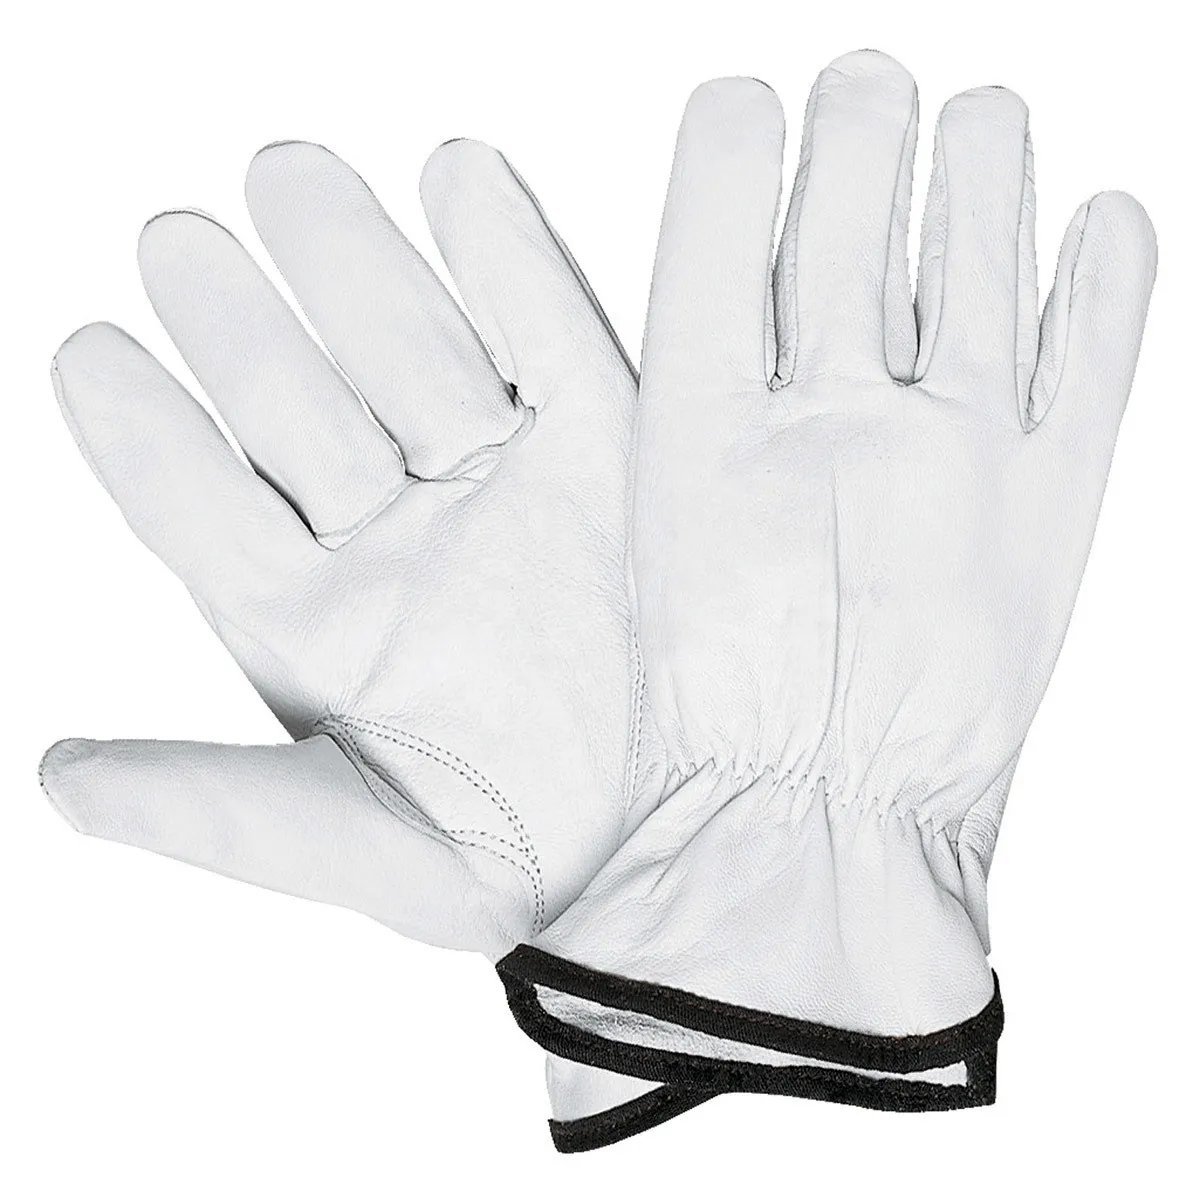 Yumuşak pamuk gerilebilir astar beyaz eldivenler ucuz toptan sikke takı gümüş muayene eldiven